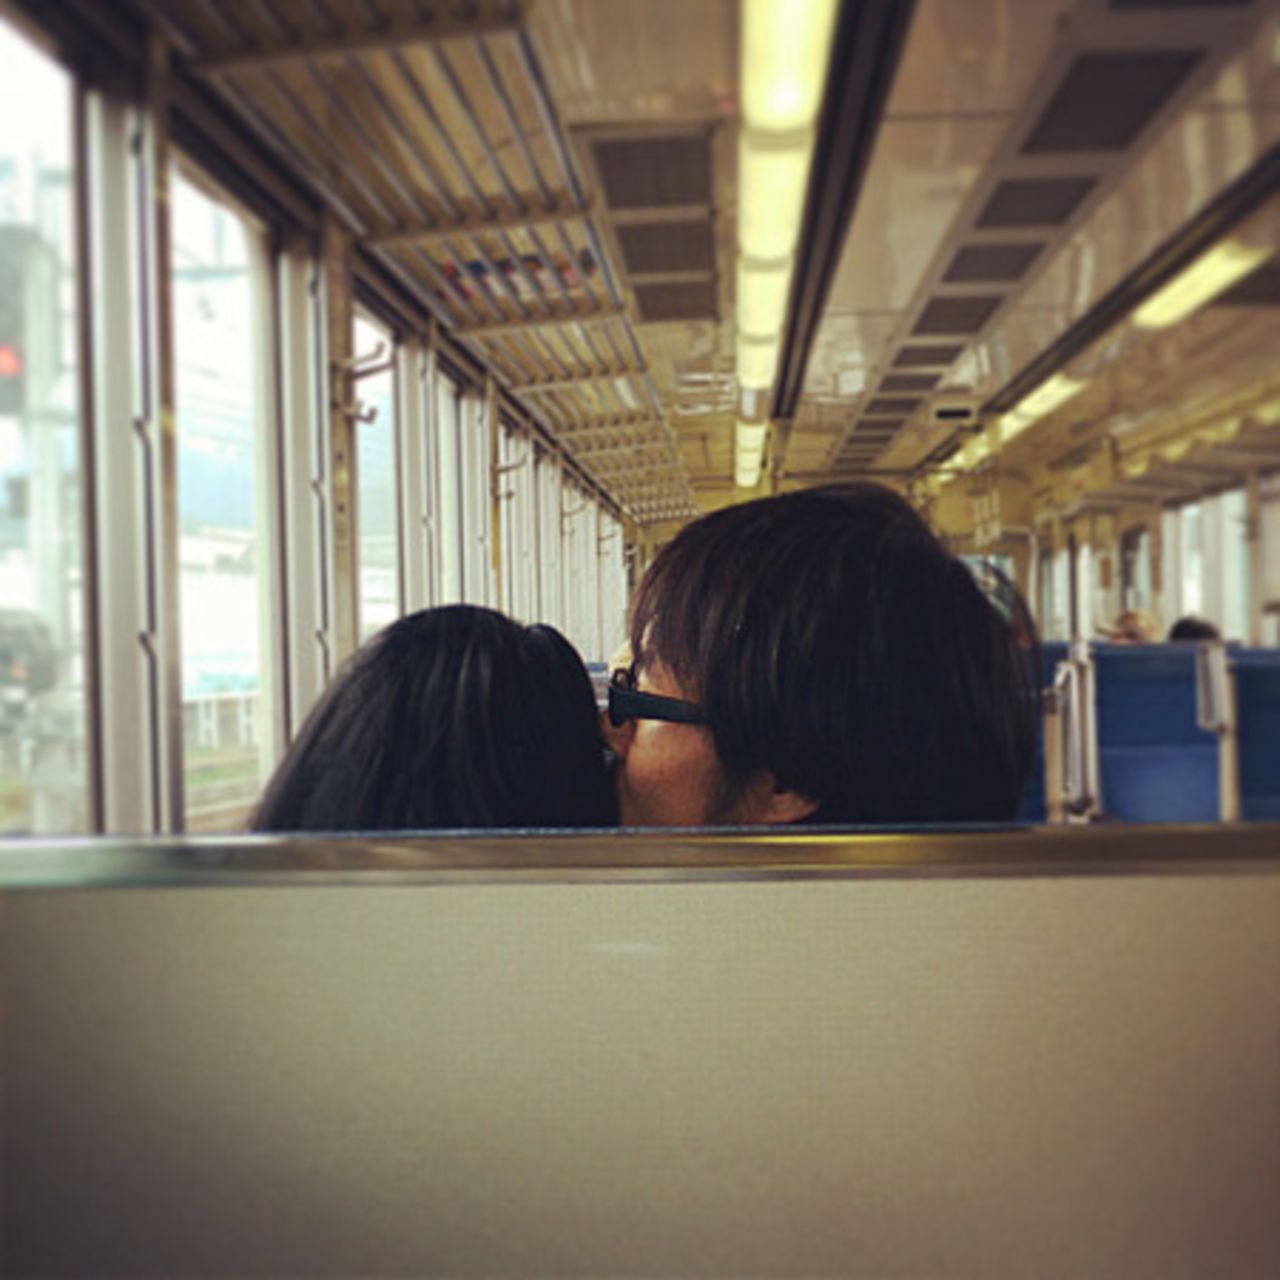 Al igual que las parejas que muestran su afecto en público, Keisuke dice que la primera regla para los viajeros solteros que quieren tomarse fotos en "citas hitori" es "no sean tímidos".